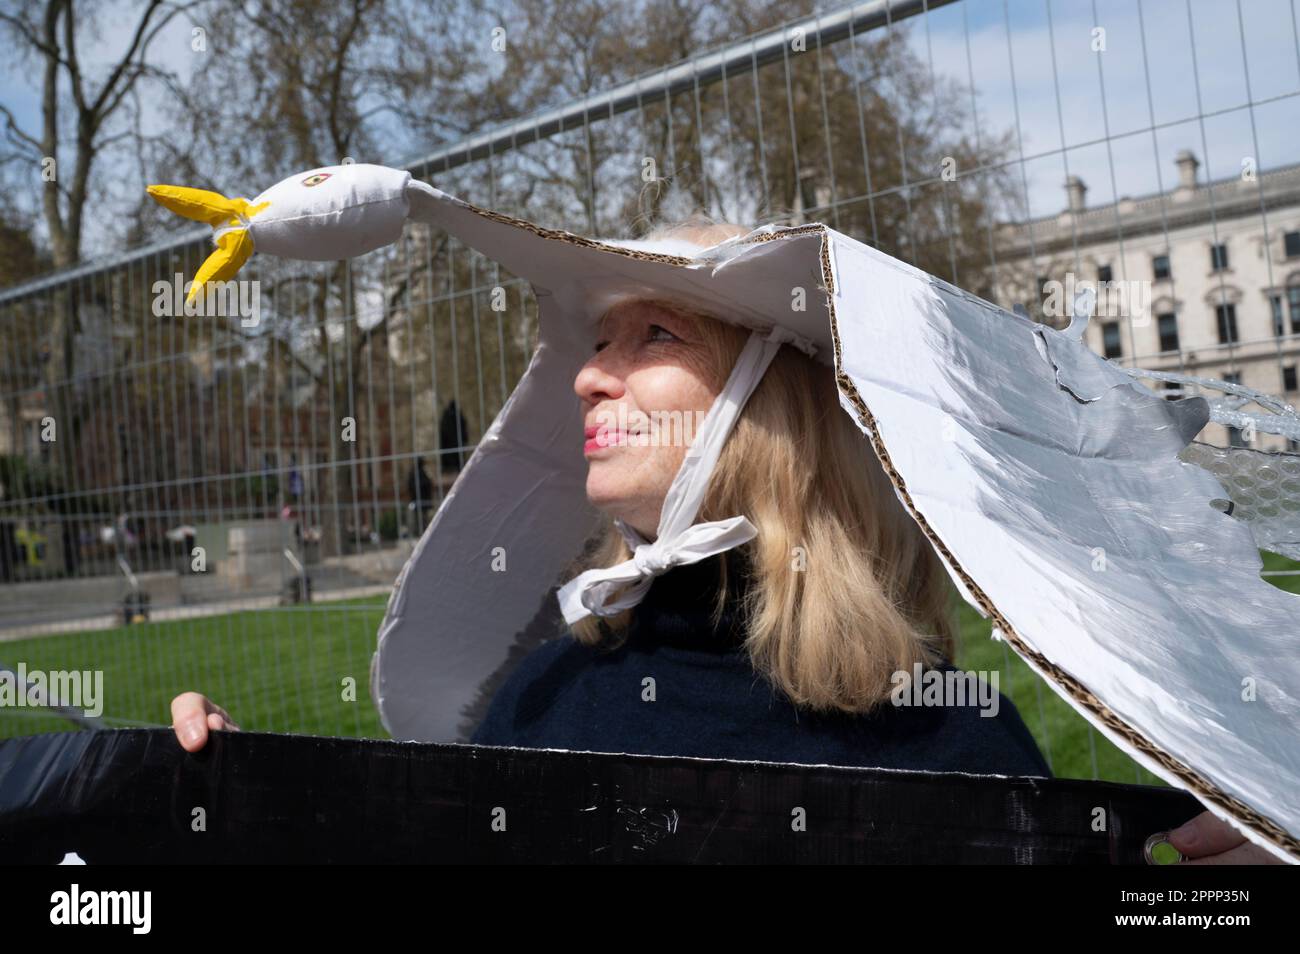 Am Earth Day fordern Aktivisten aus ganz Großbritannien, dass die Regierung mehr unternimmt, um den Klimawandel zu bewältigen. Frau mit Möwen-Hut aus Pappe. Stockfoto